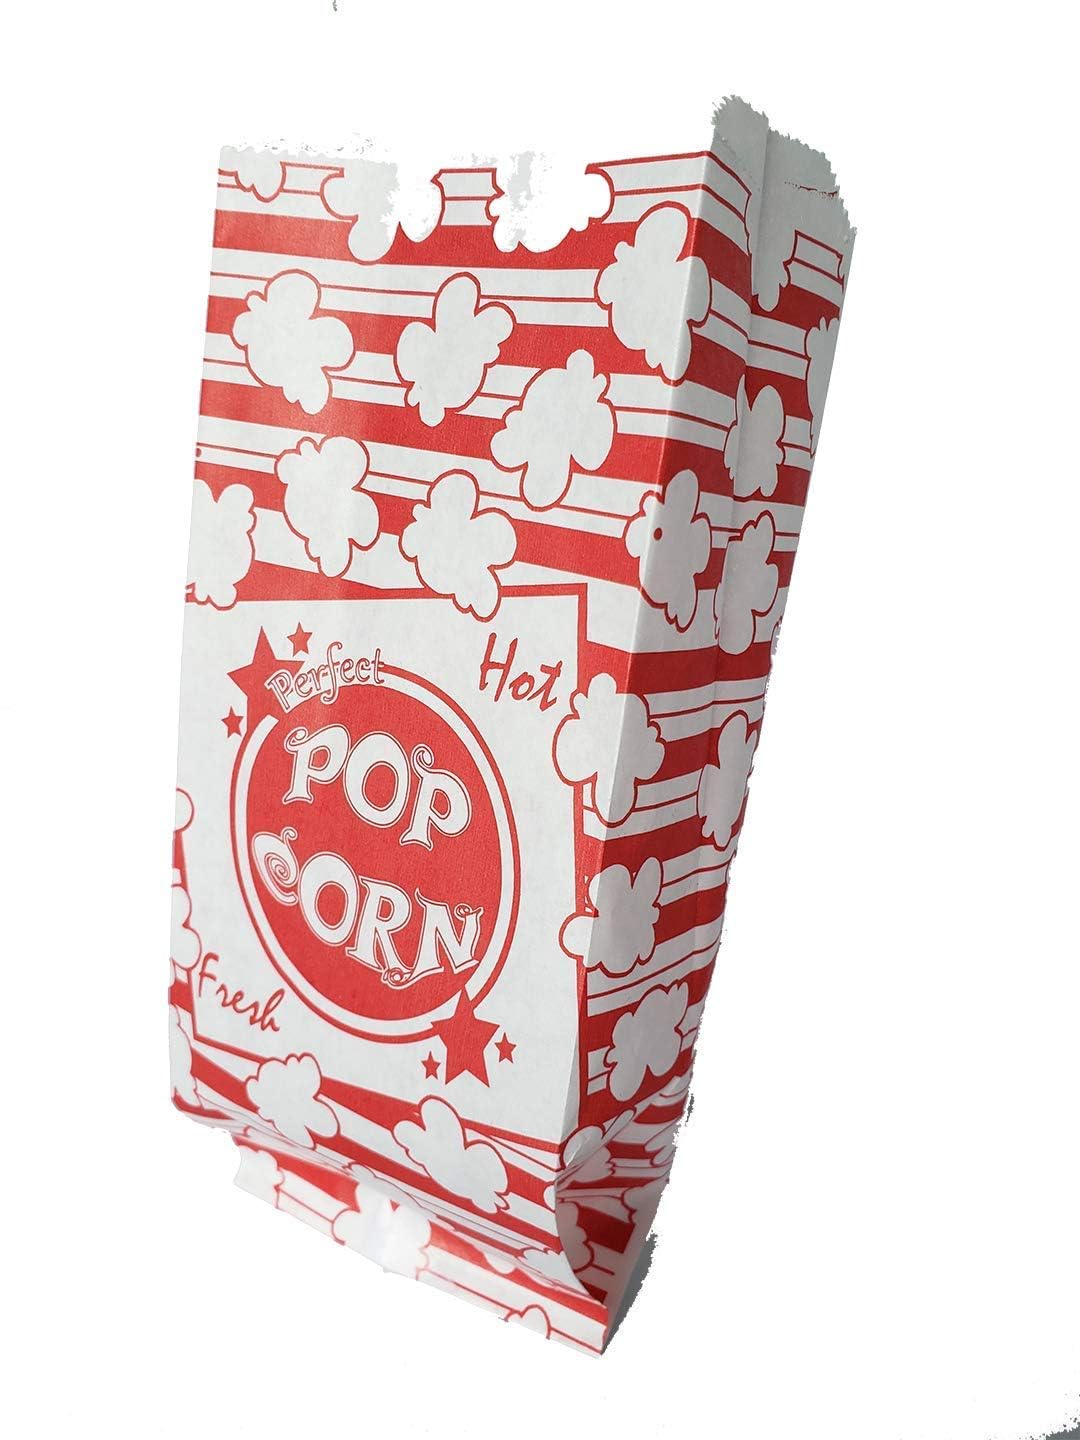 Popcorn Bag Pack of 1000 Bags